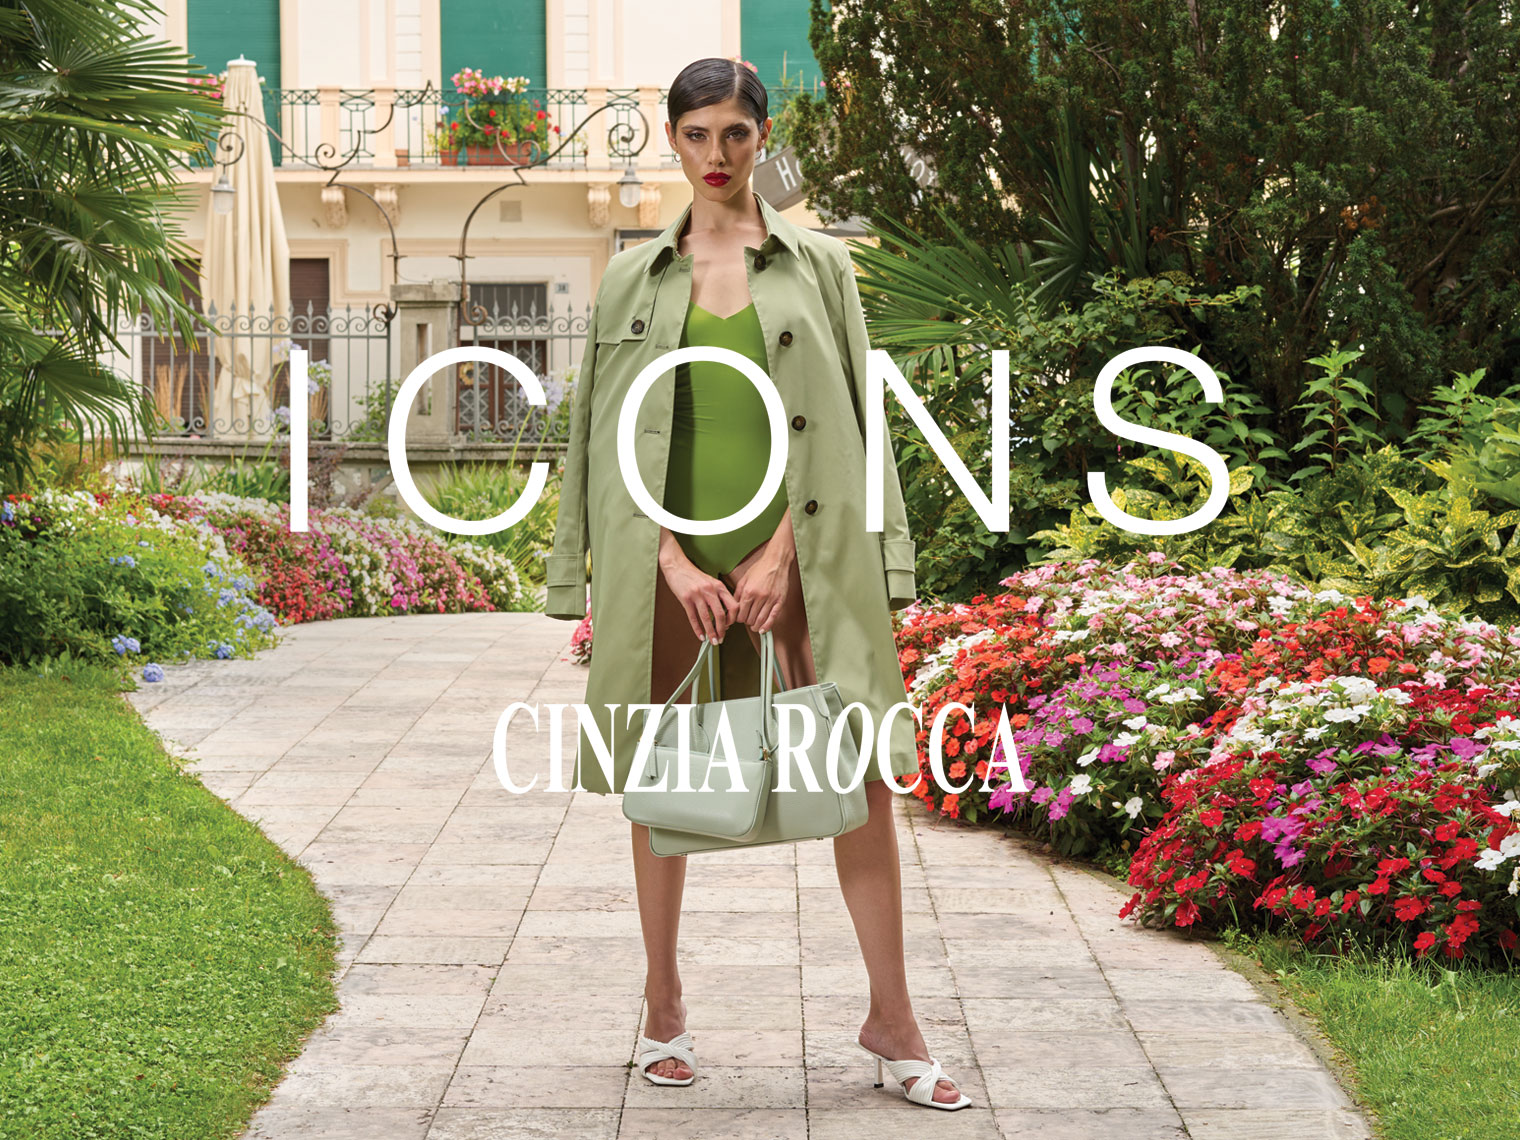 Icons Cinzia Rocca